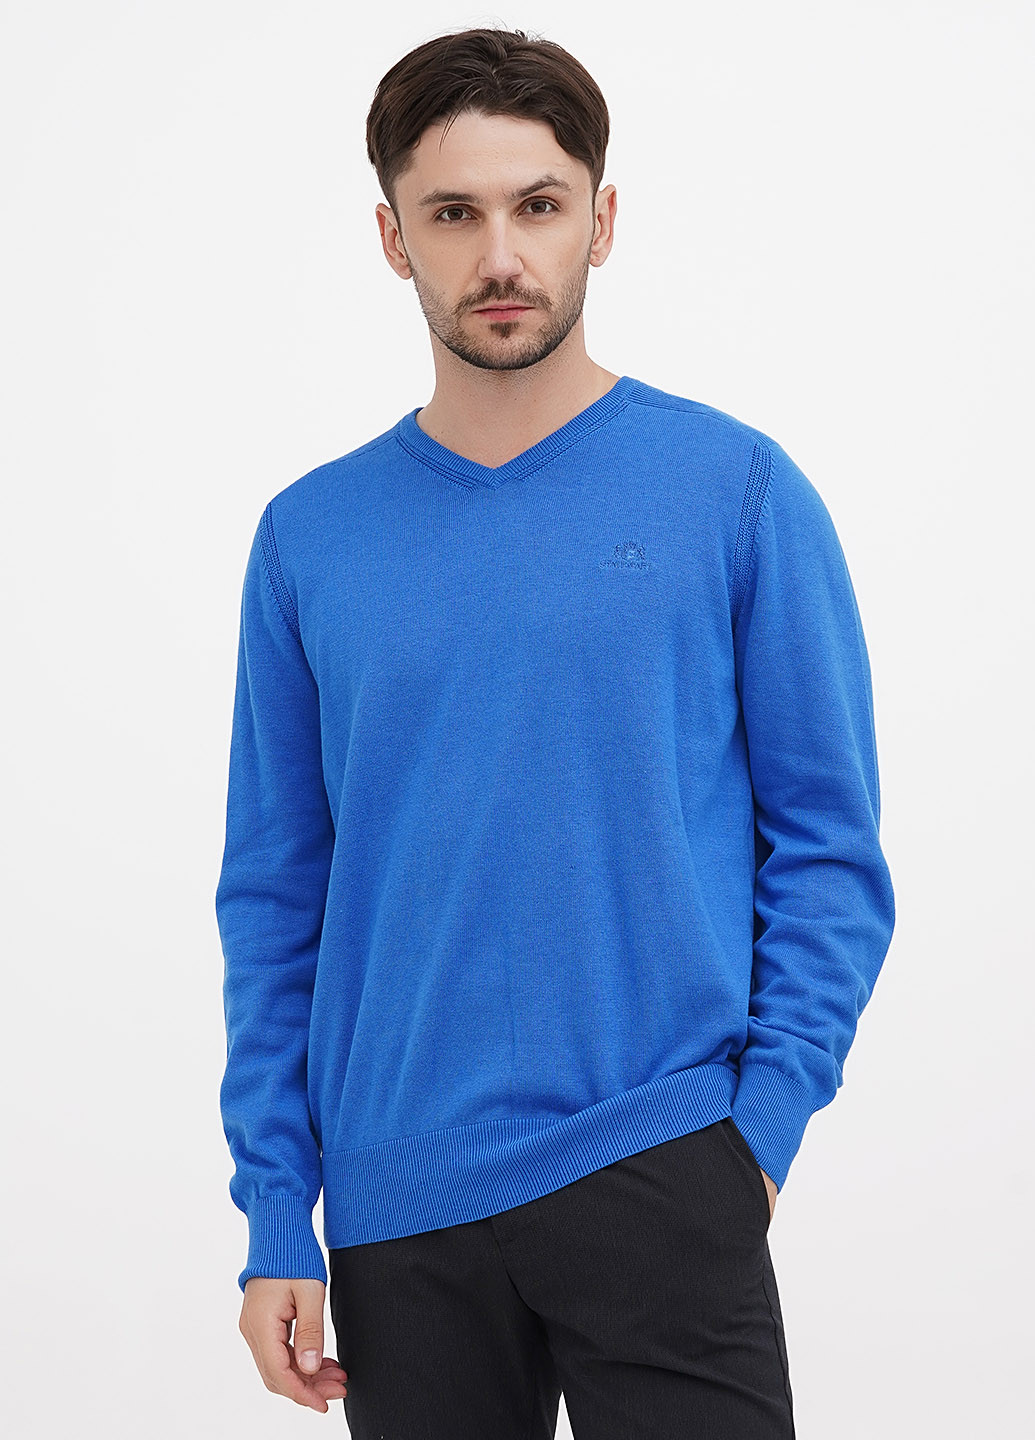 Синий демисезонный пуловер пуловер State of Art